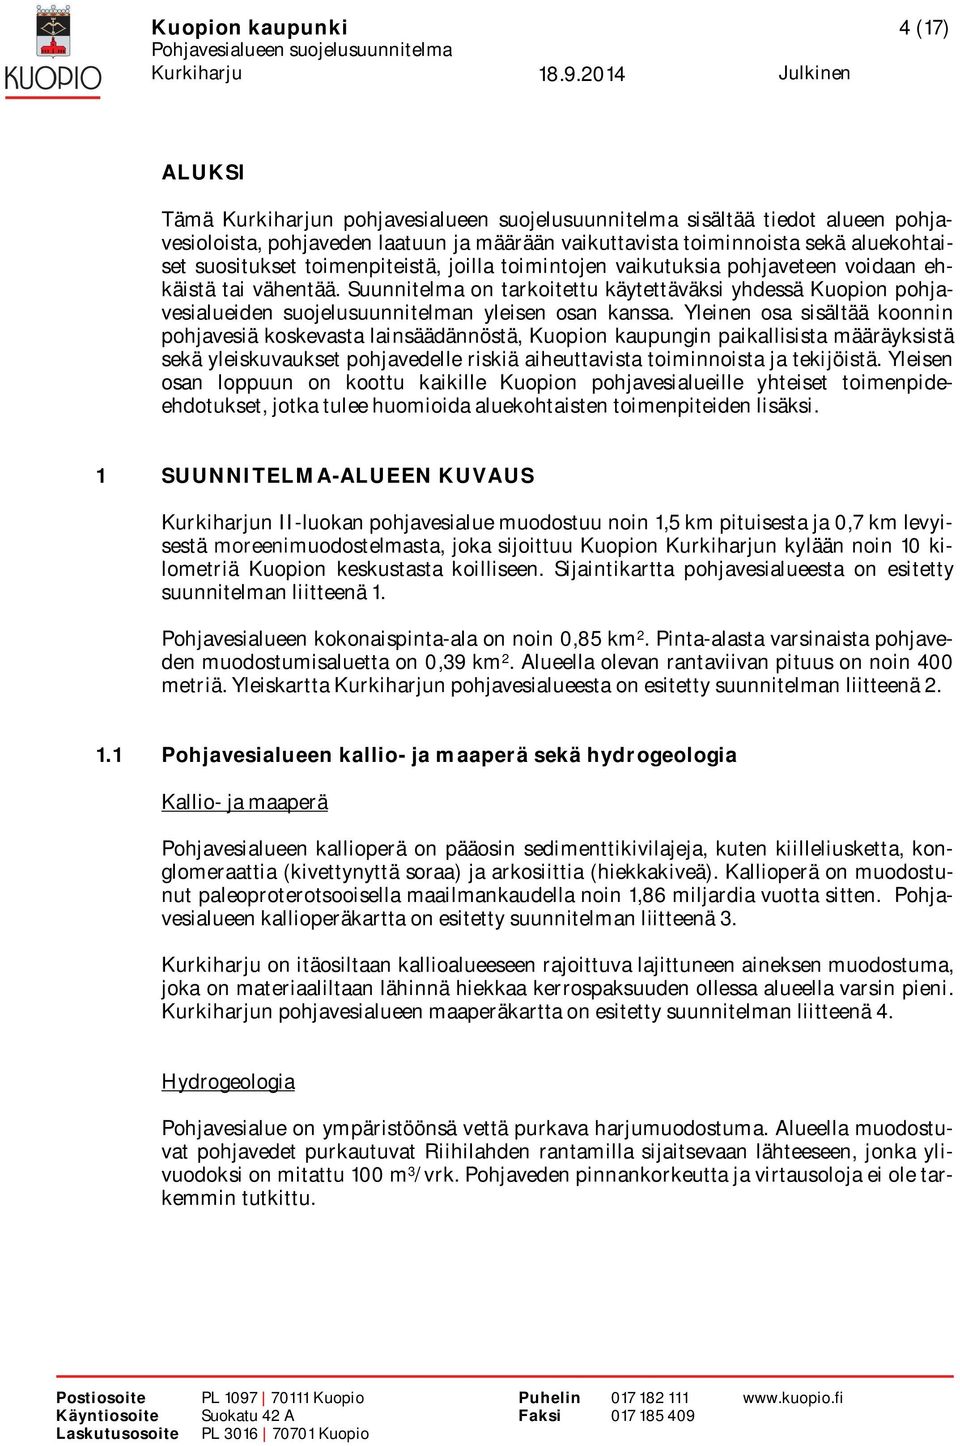 Suunnitelma on tarkoitettu käytettäväksi yhdessä Kuopion pohjavesialueiden suojelusuunnitelman yleisen osan kanssa.